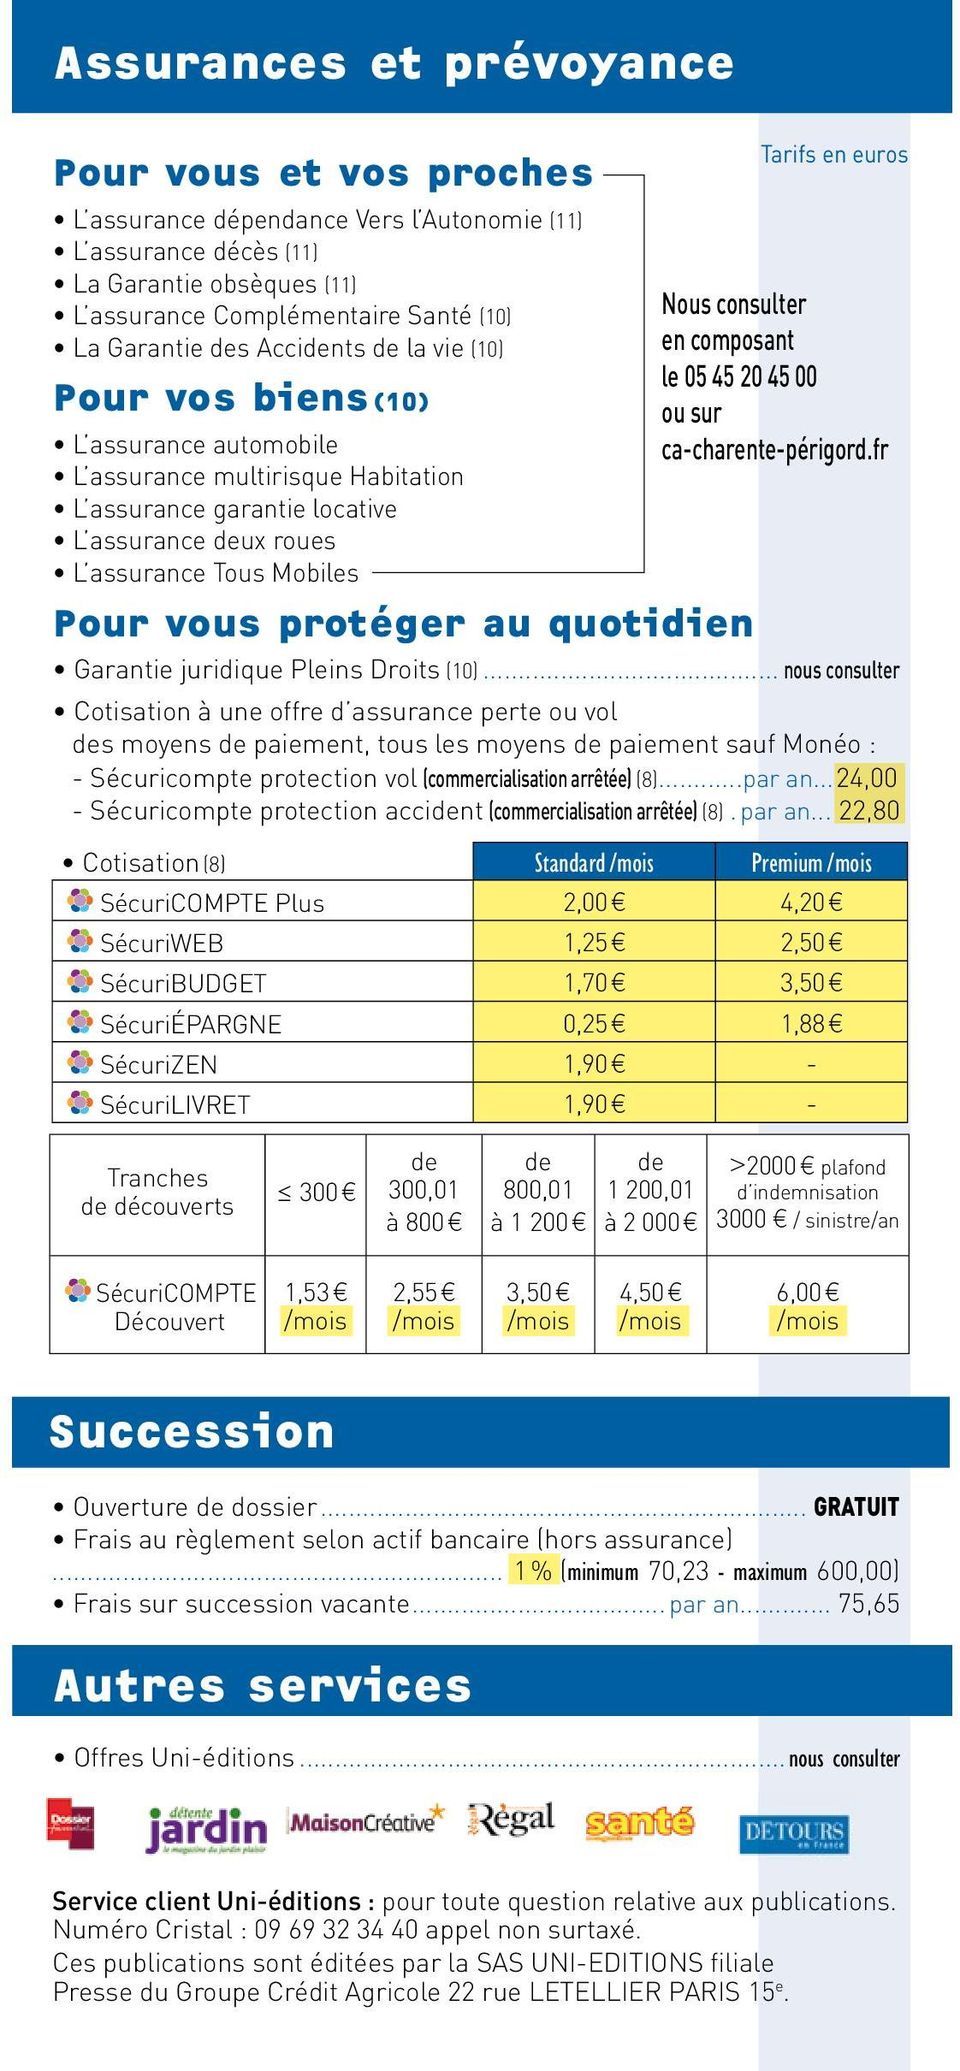 au quotidien Tarifs en euros Nous consulter en composant le 05 45 20 45 00 ou sur ca-charente-périgord.fr Garantie juridique Pleins Droits (10).